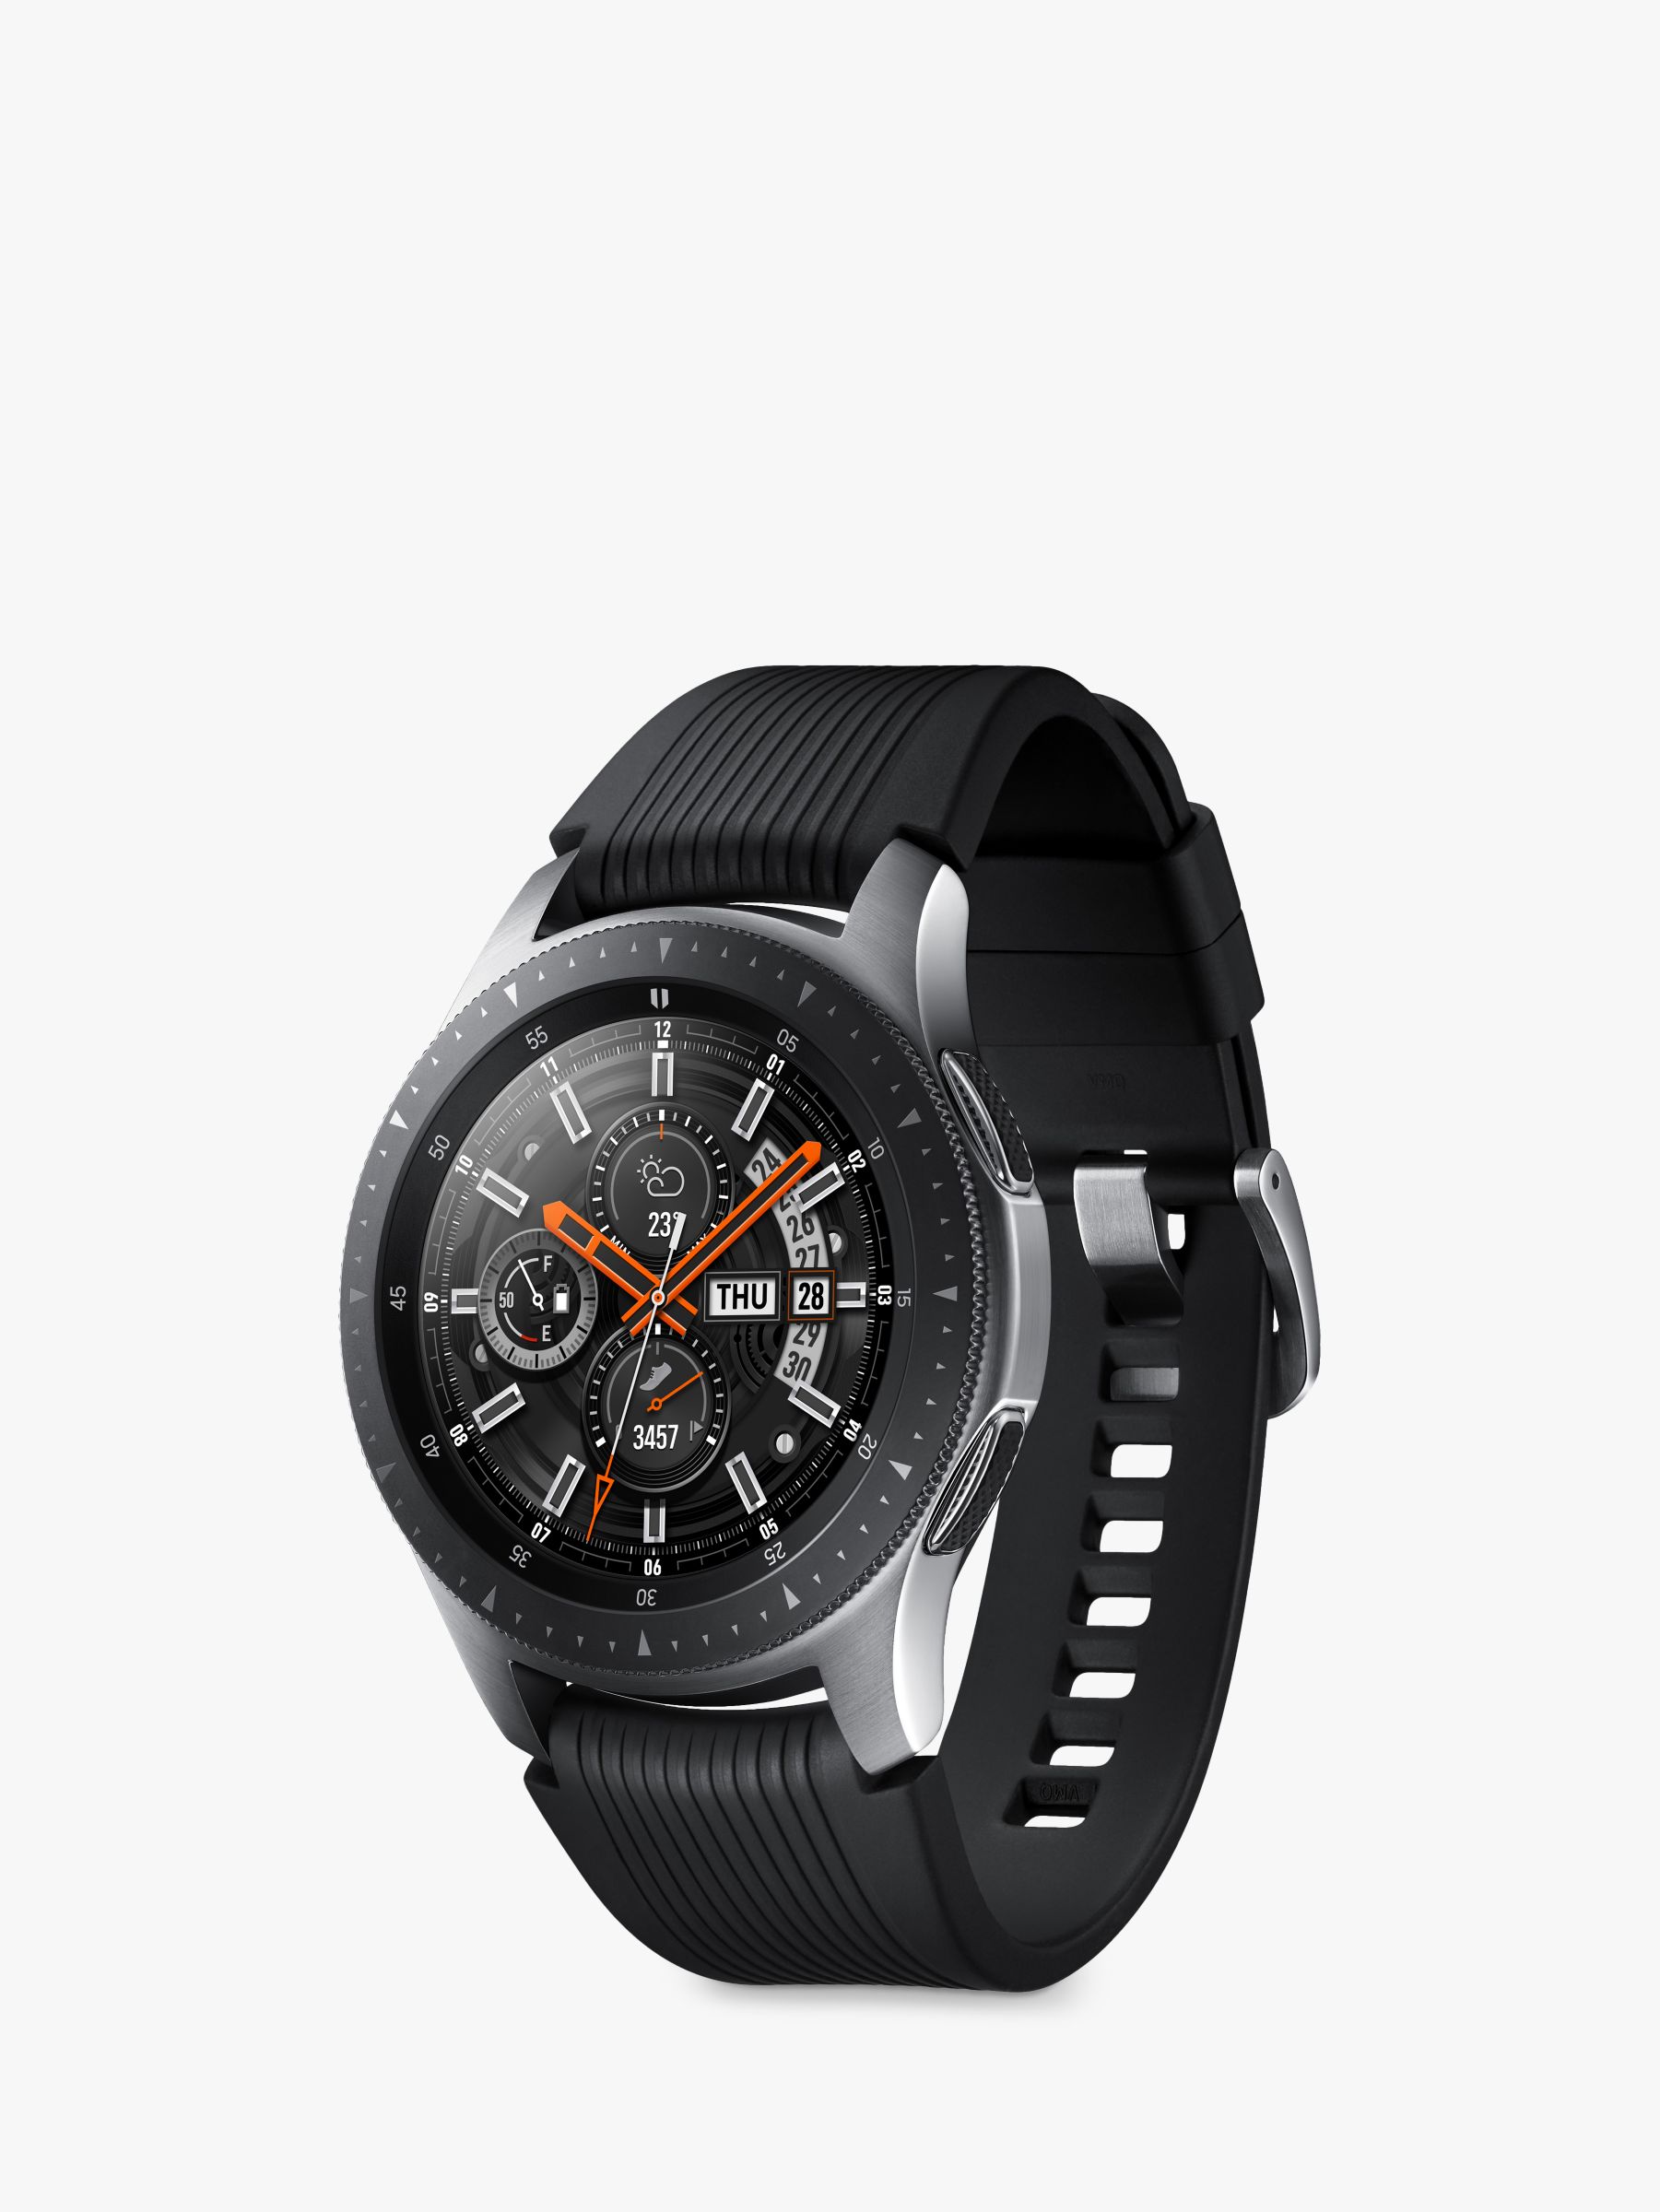 buy galaxy watch 46mm